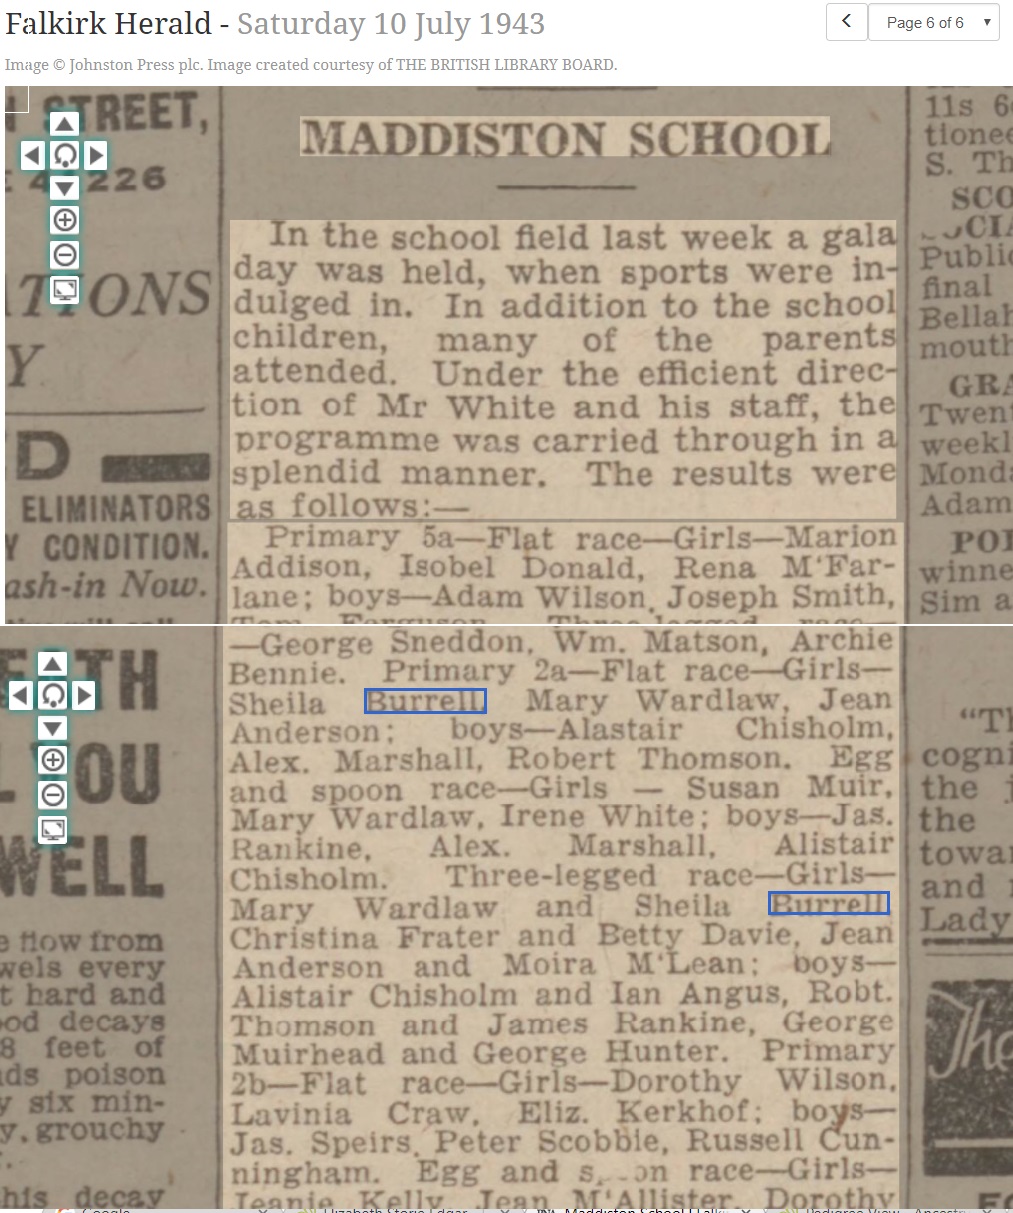 Sheila Burrell 1943 Maddiston School, July 10, 1943